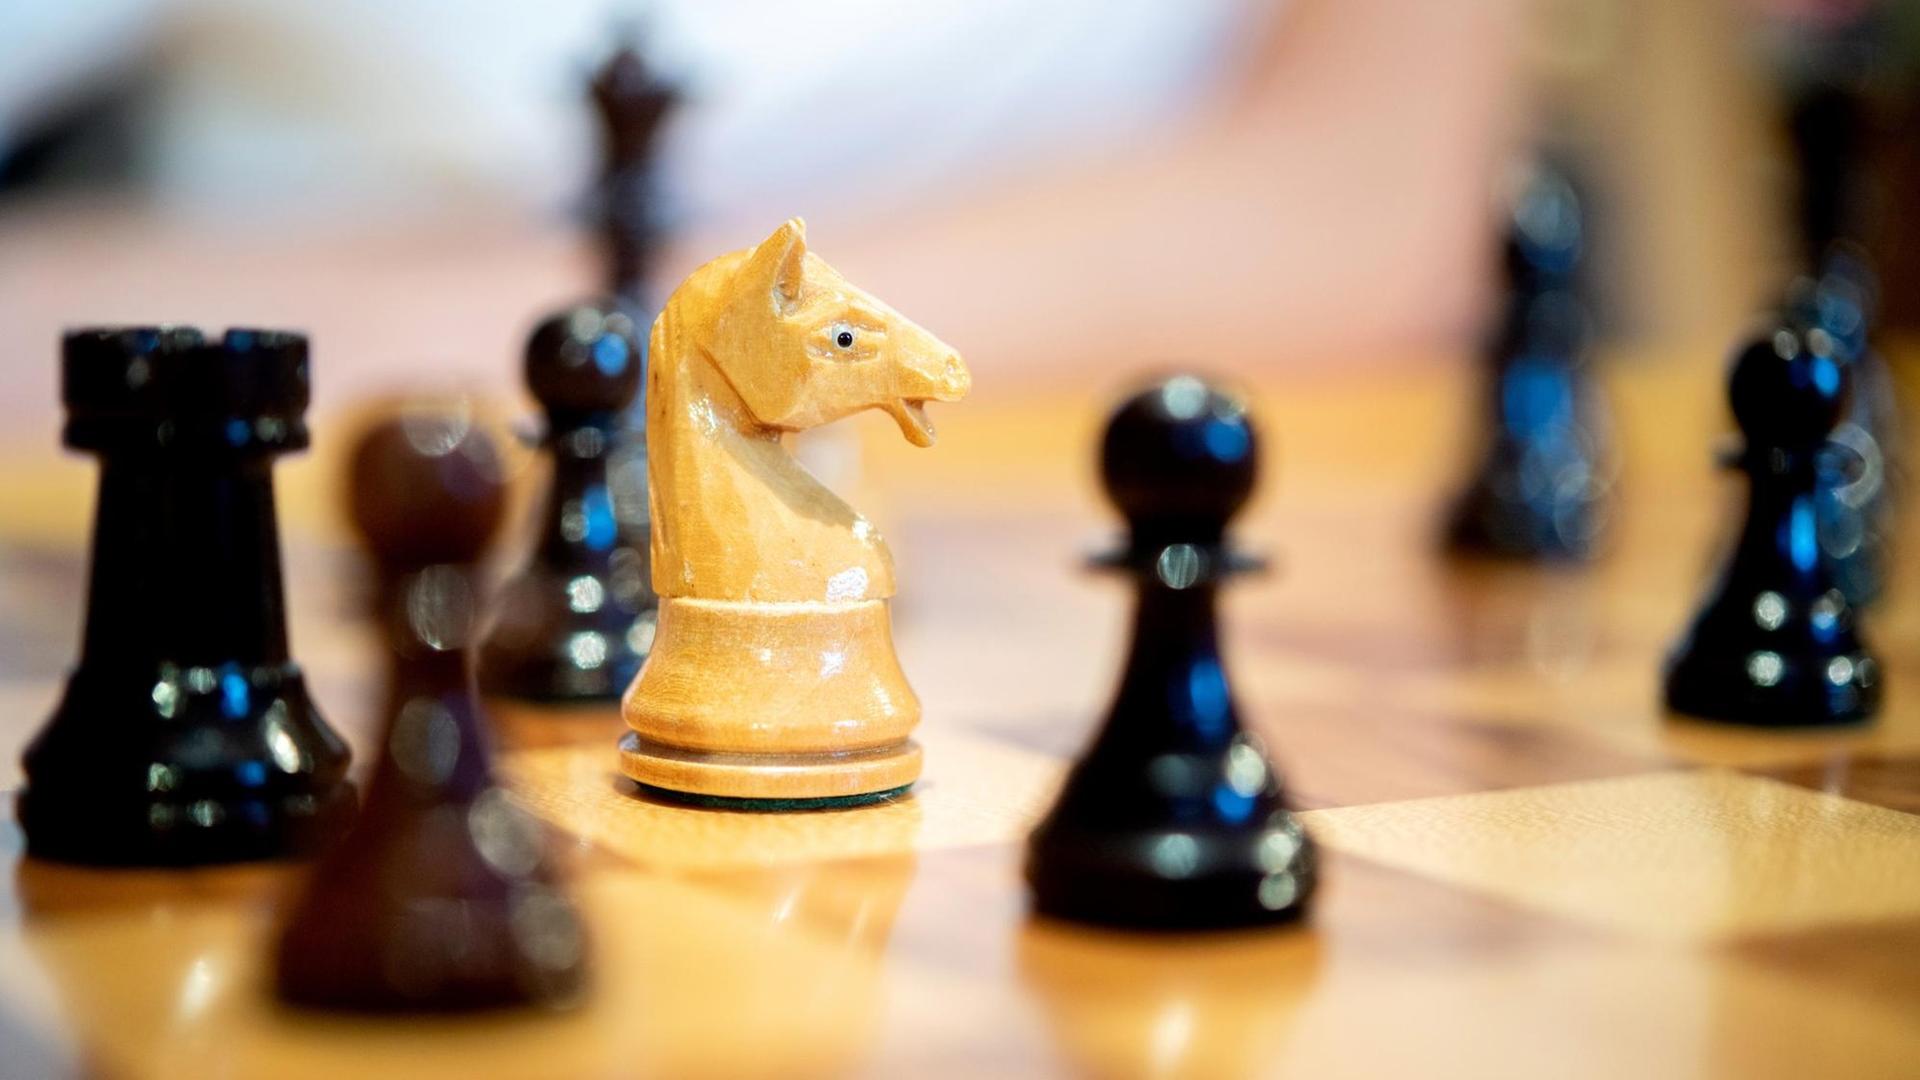 Schach-Figuren aus Holz stehen auf einem Schach-Brett.